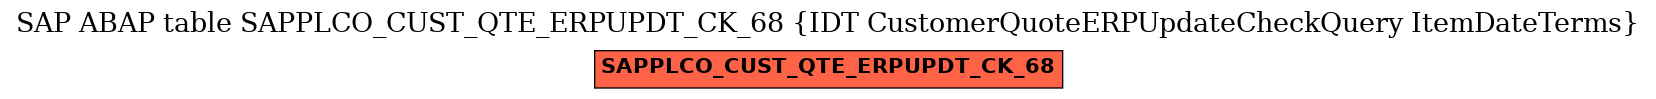 E-R Diagram for table SAPPLCO_CUST_QTE_ERPUPDT_CK_68 (IDT CustomerQuoteERPUpdateCheckQuery ItemDateTerms)